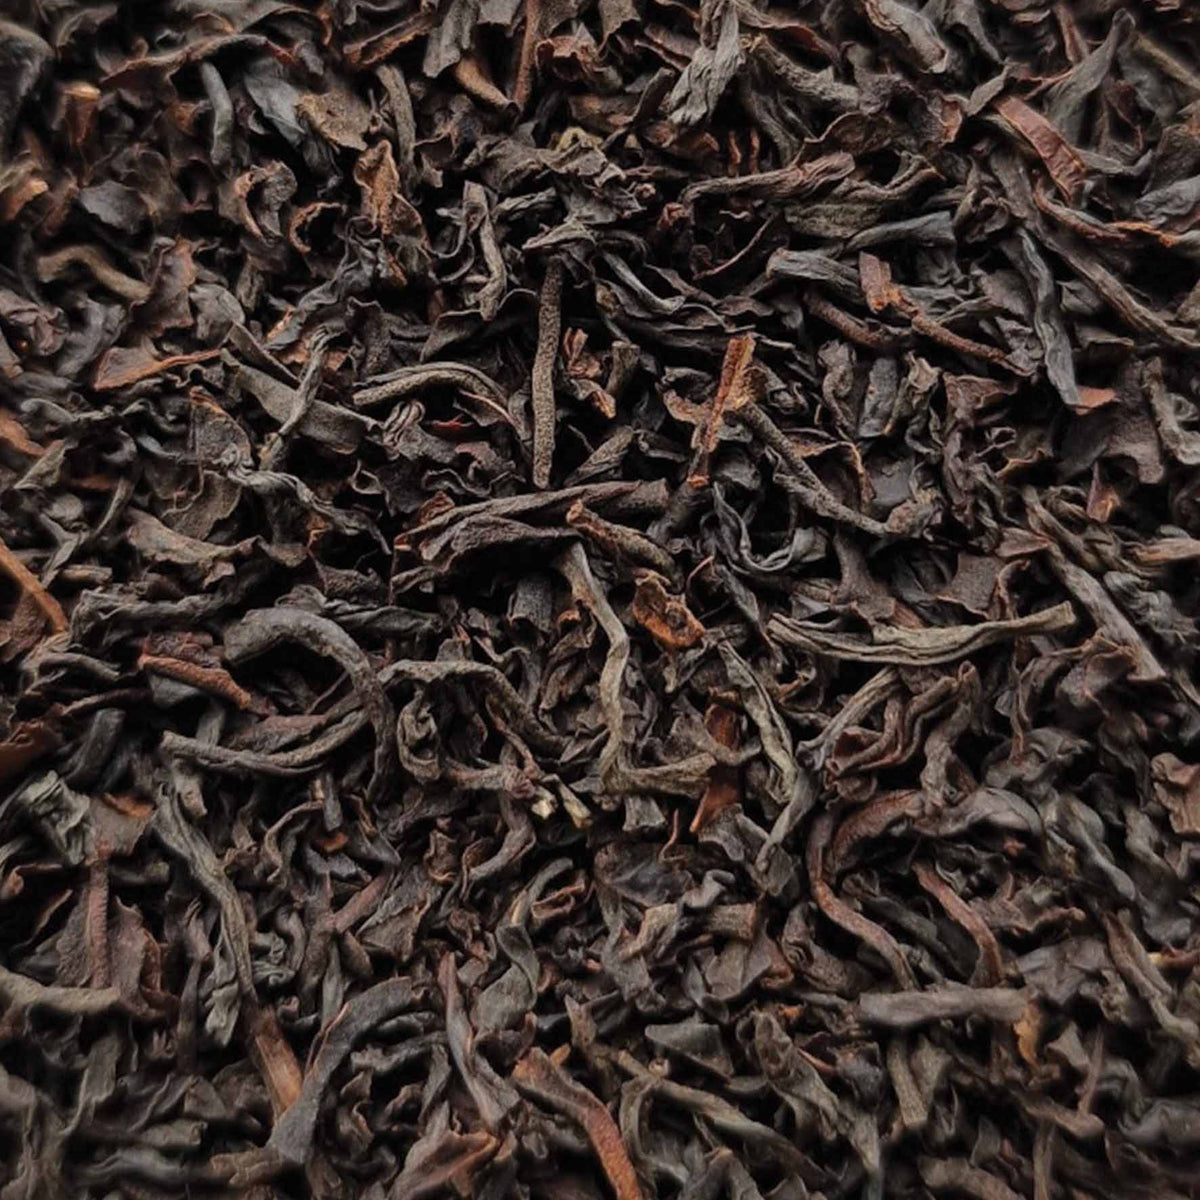 Premium Java Black Estate Loose Leaf Tea - tea leaves